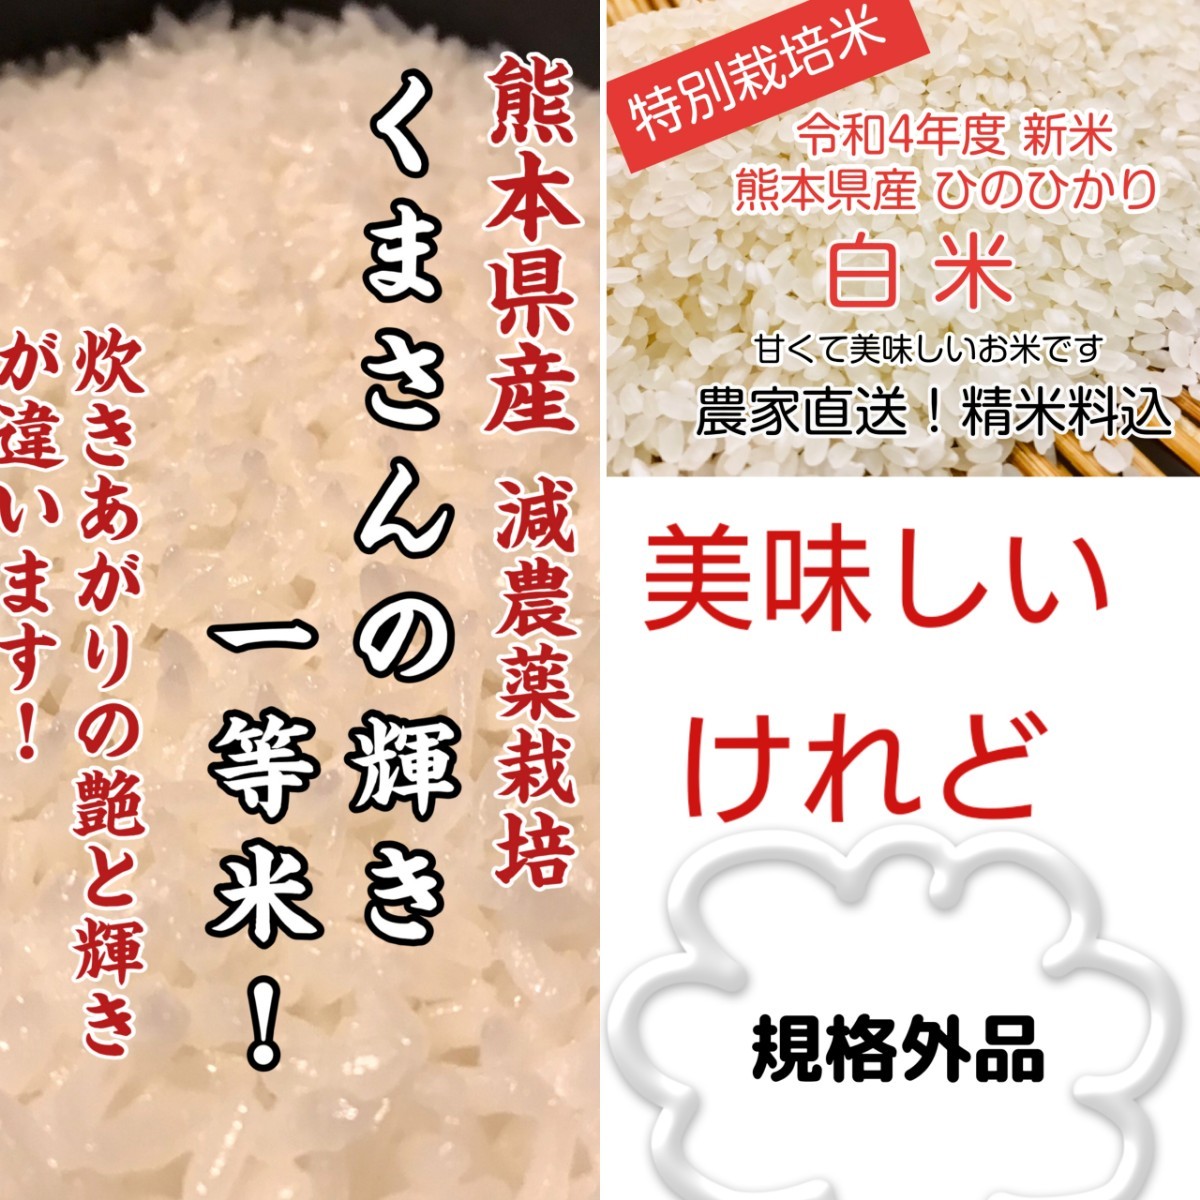 農家直送の美味しいお米 令和4年度産 ヒノヒカリ 25キロ - 米